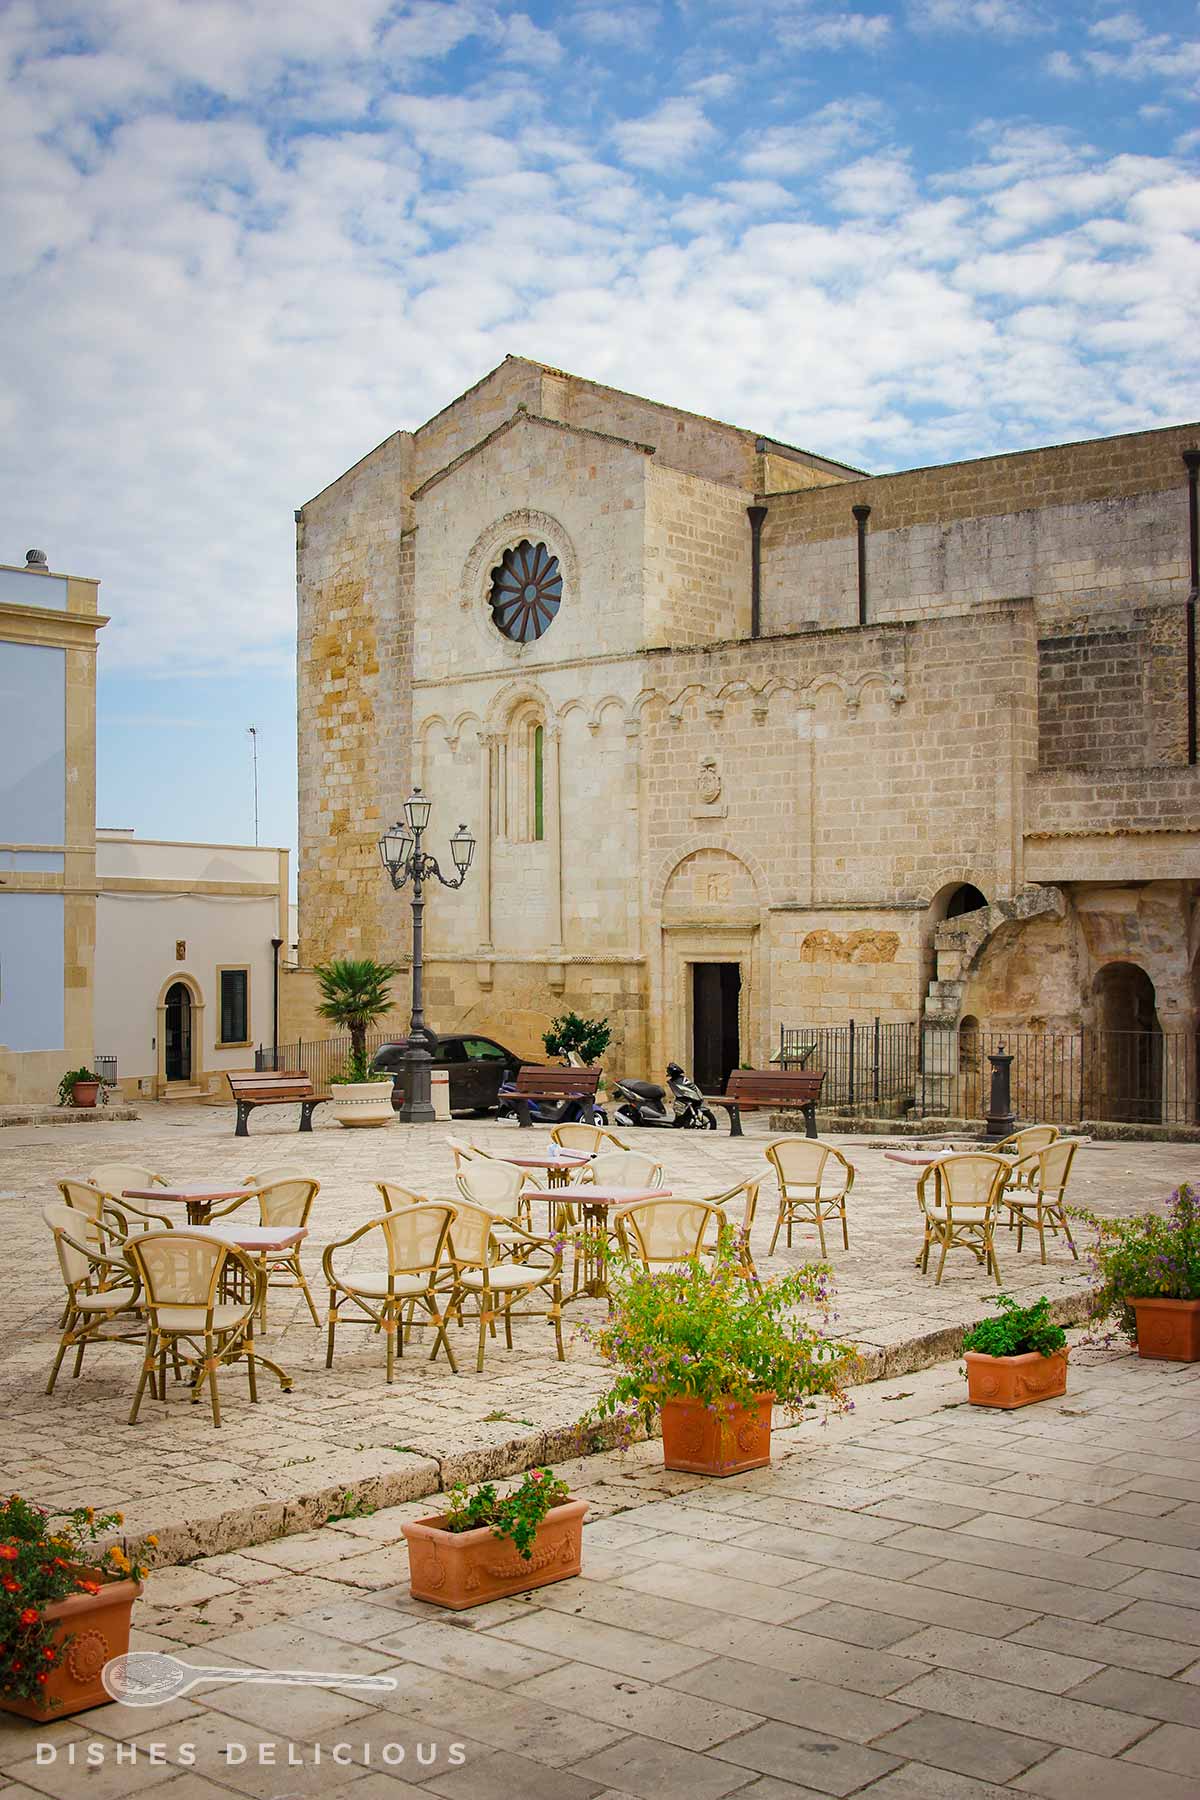 Die Kirche Maria SS Annunziata, auf der Piazza davor hat ein Café Stühle aufgestellt.